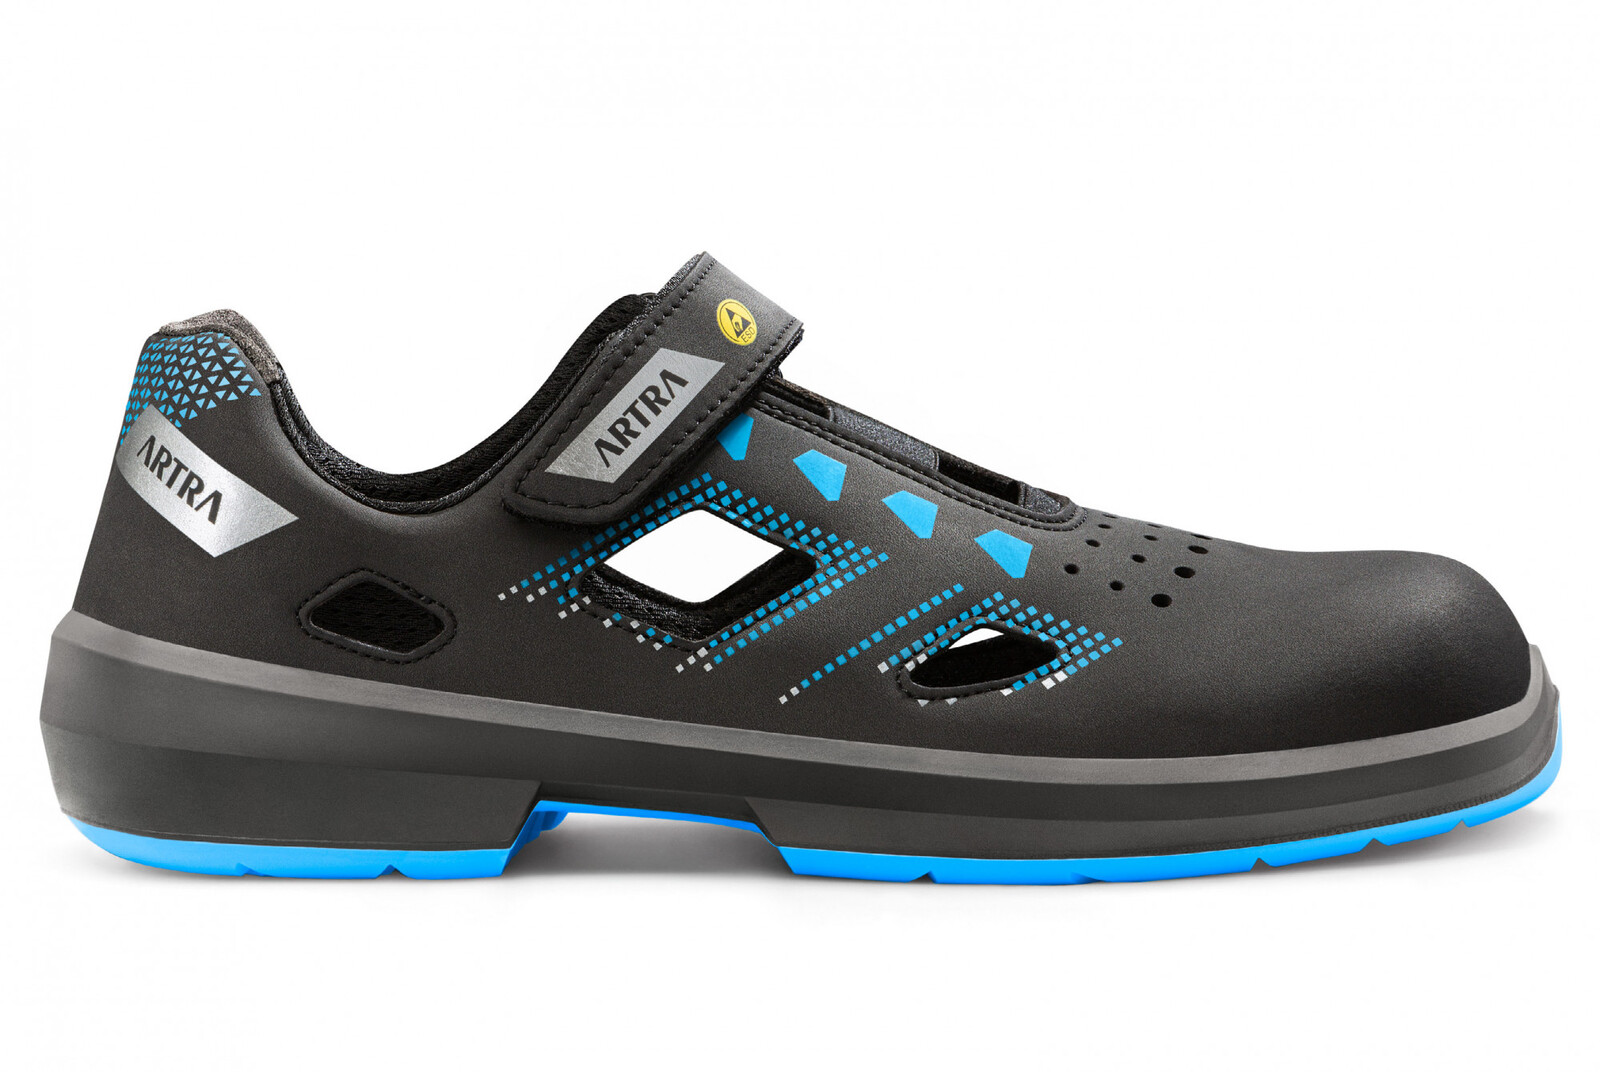 Bezpečnostné sandále Artra Arzo 805 619090 S1P SRC ESD MF - veľkosť: 36, farba: čierna/modrá